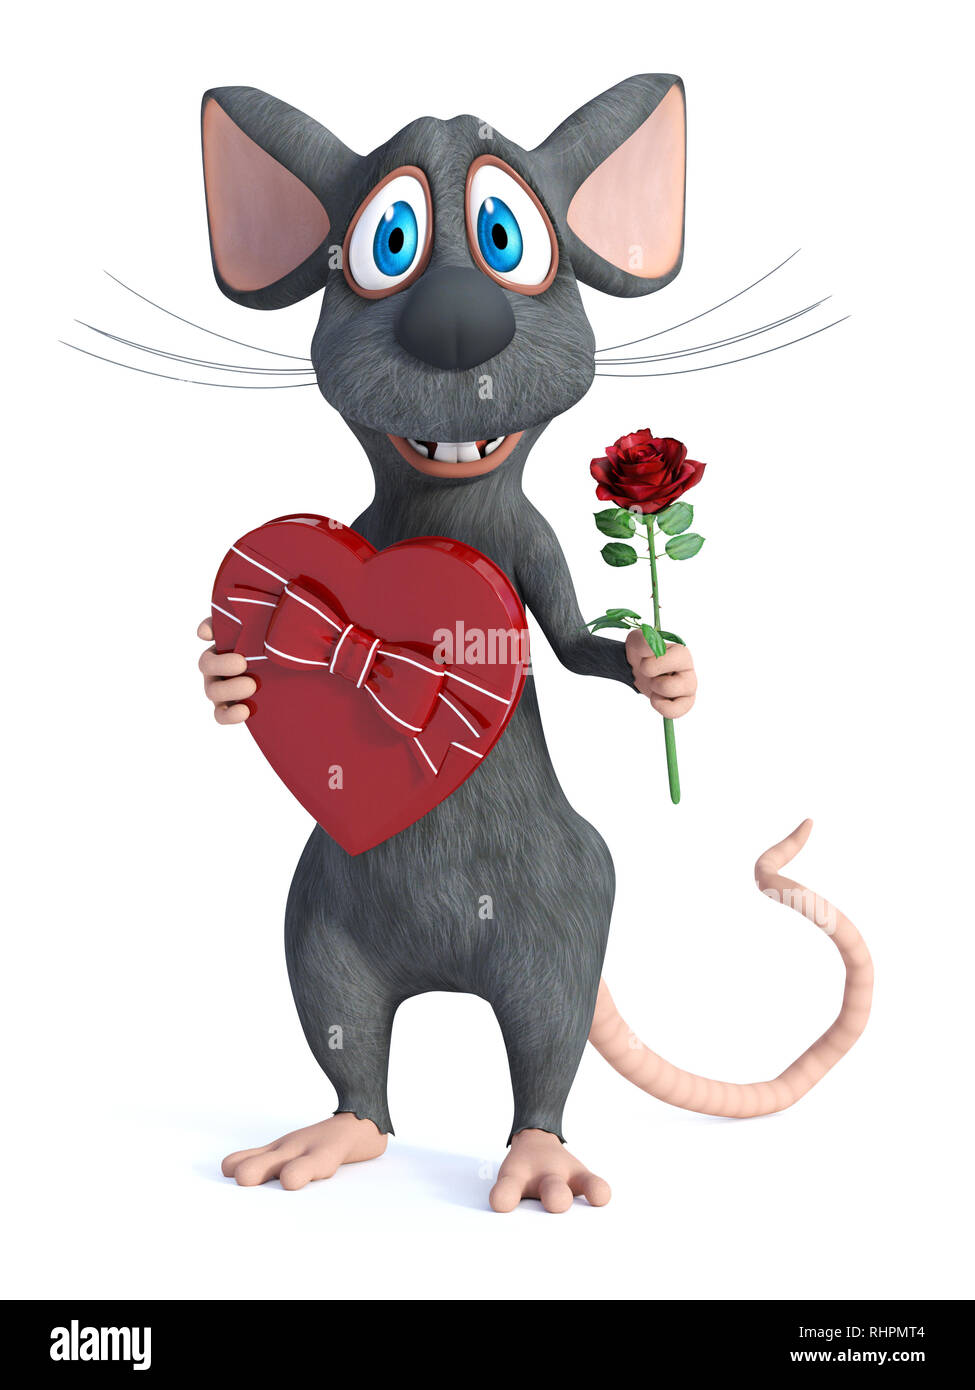 Le rendu 3D d'un sourire mignon cartoon souris tenant une boîte de chocolat en forme de cœur dans une main et une rose rouge dans l'autre main. Il est prêt pour un Rom Banque D'Images